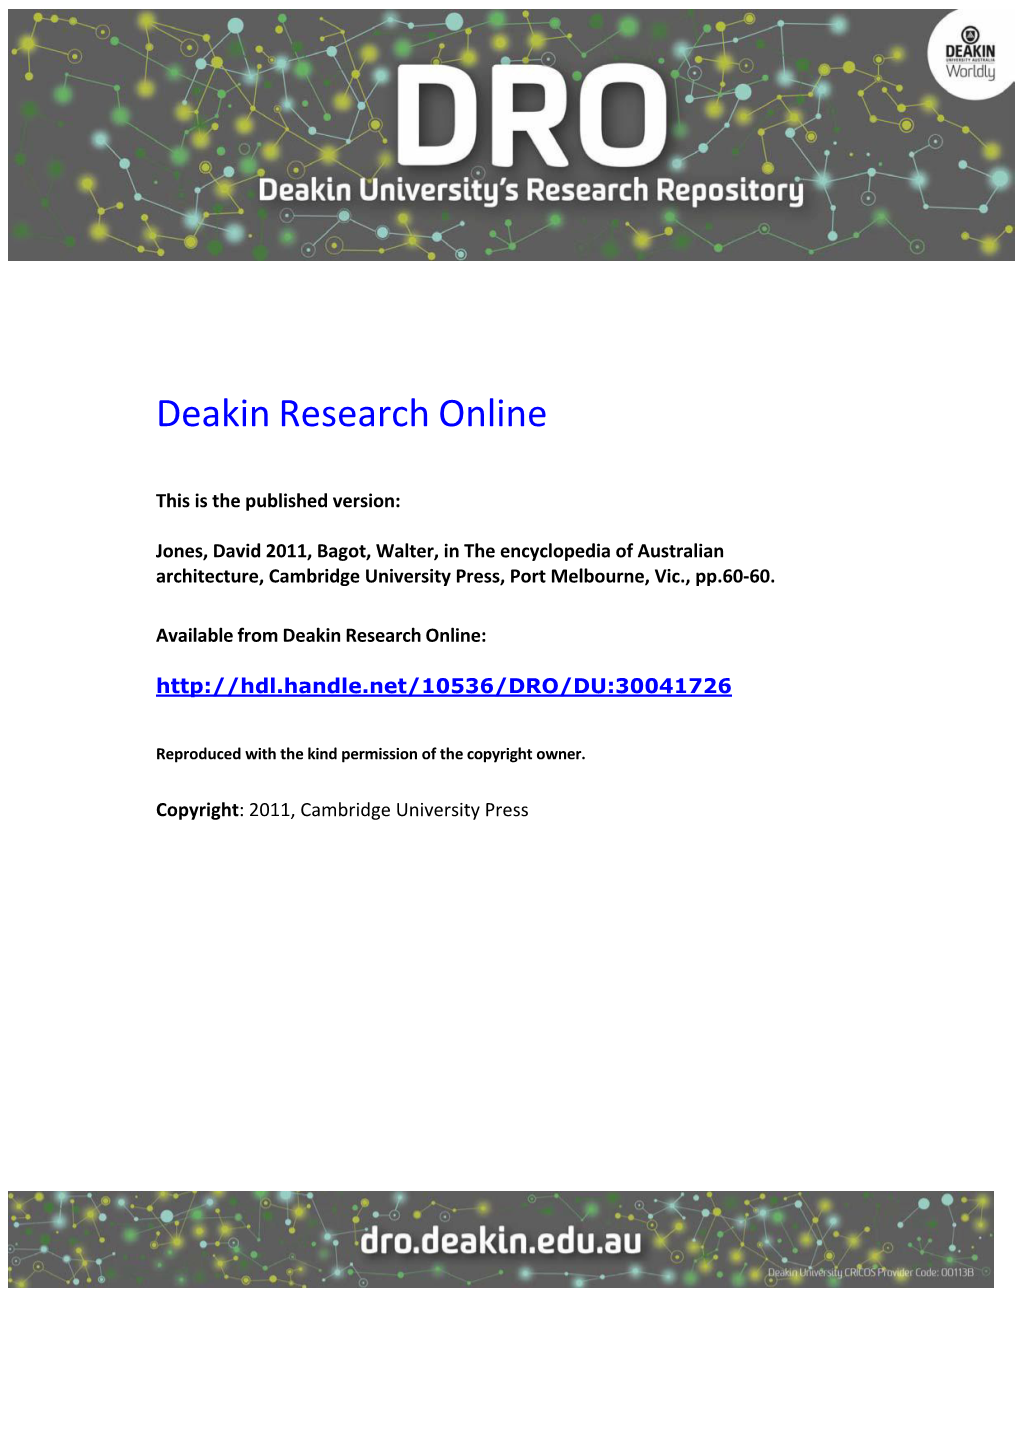 Deakin Research Online